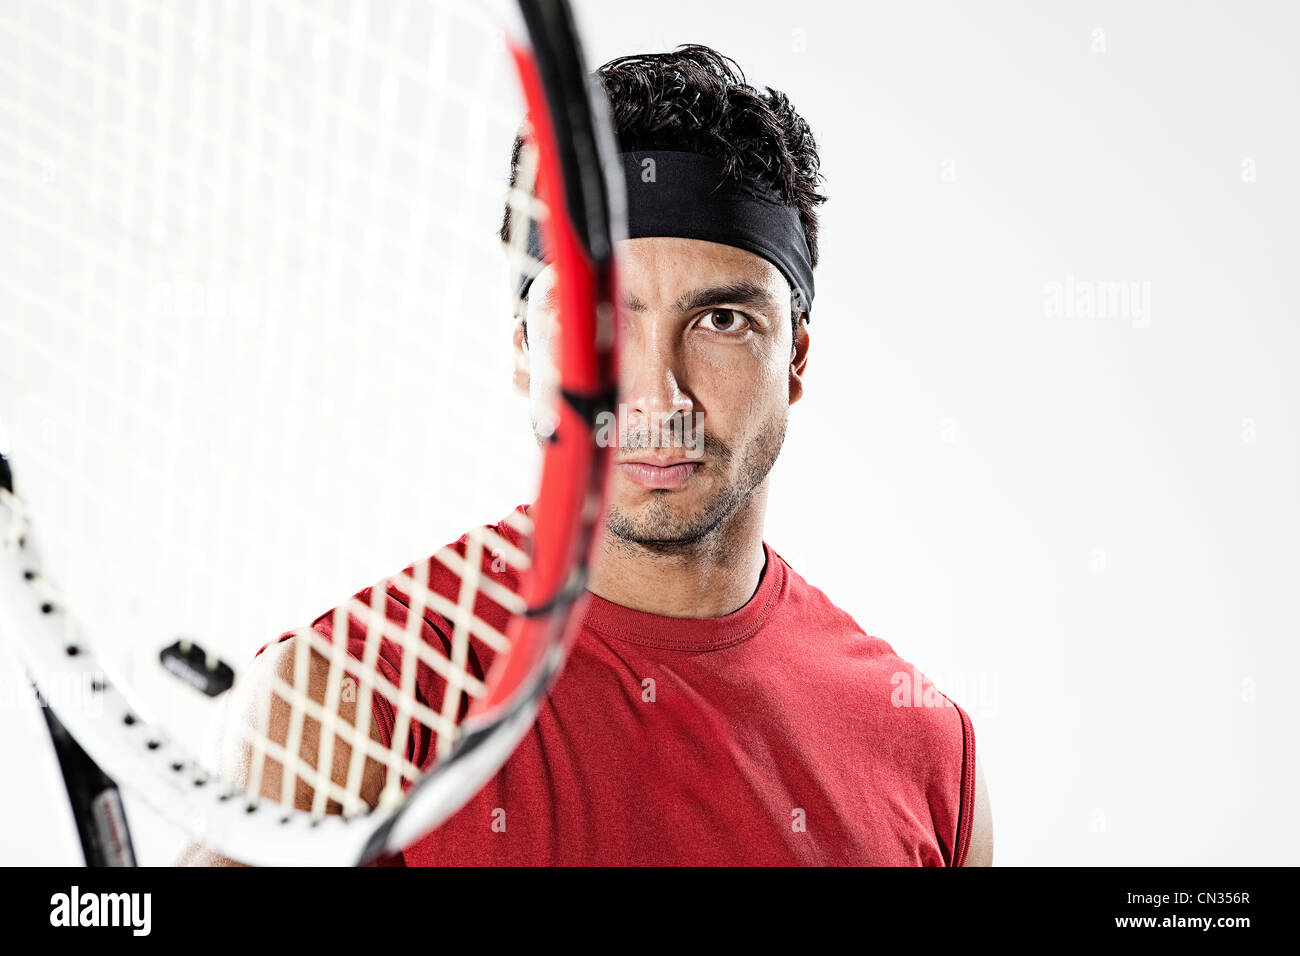 Joueur de tennis masculin, portrait Banque D'Images